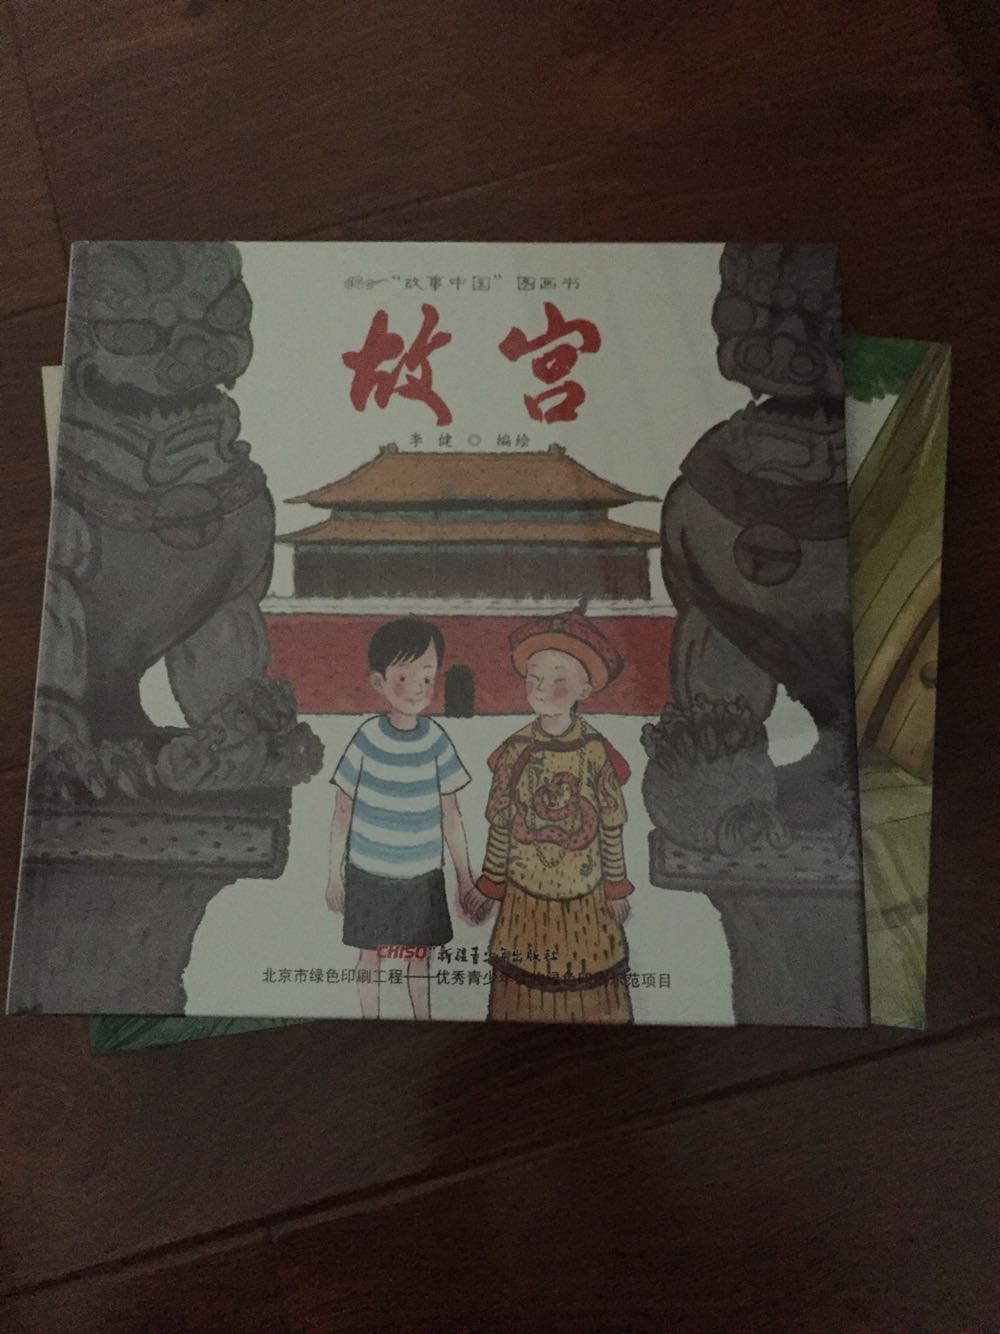 还不错，喜欢这本书的画风，给孩子讲讲传统文化。